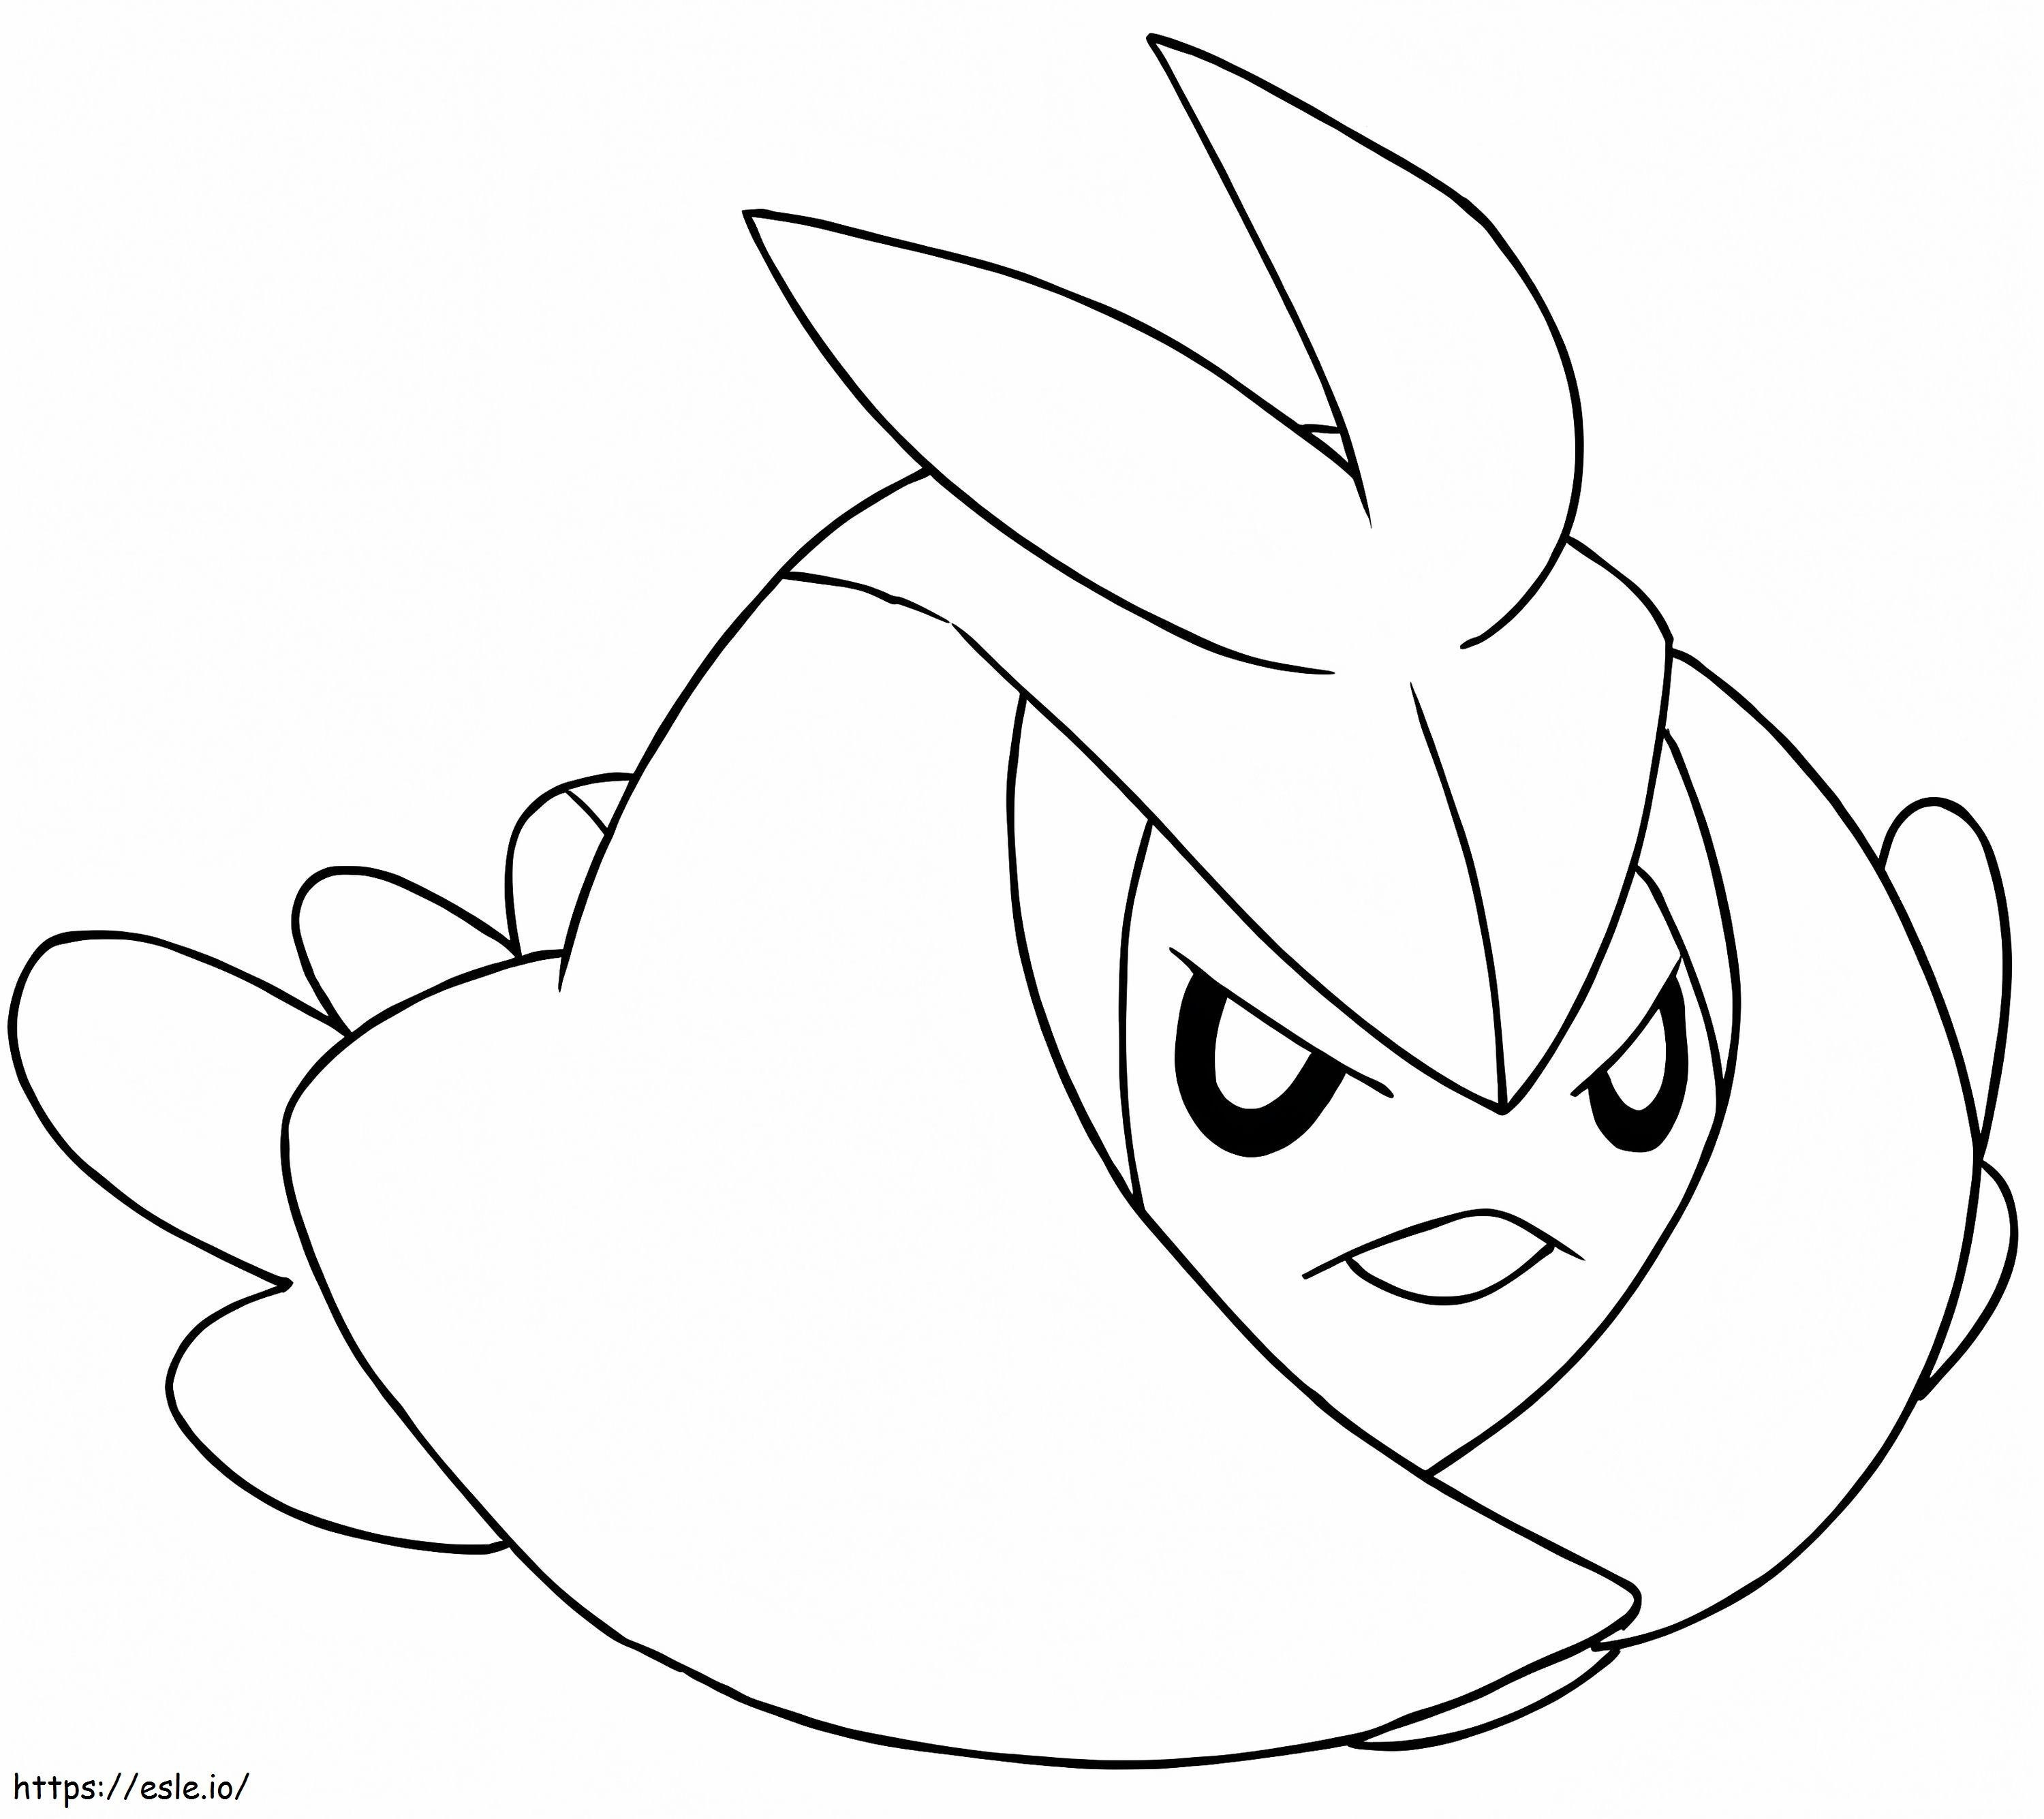 Coloriage Pokémon Swadloon Gen 5 à imprimer dessin